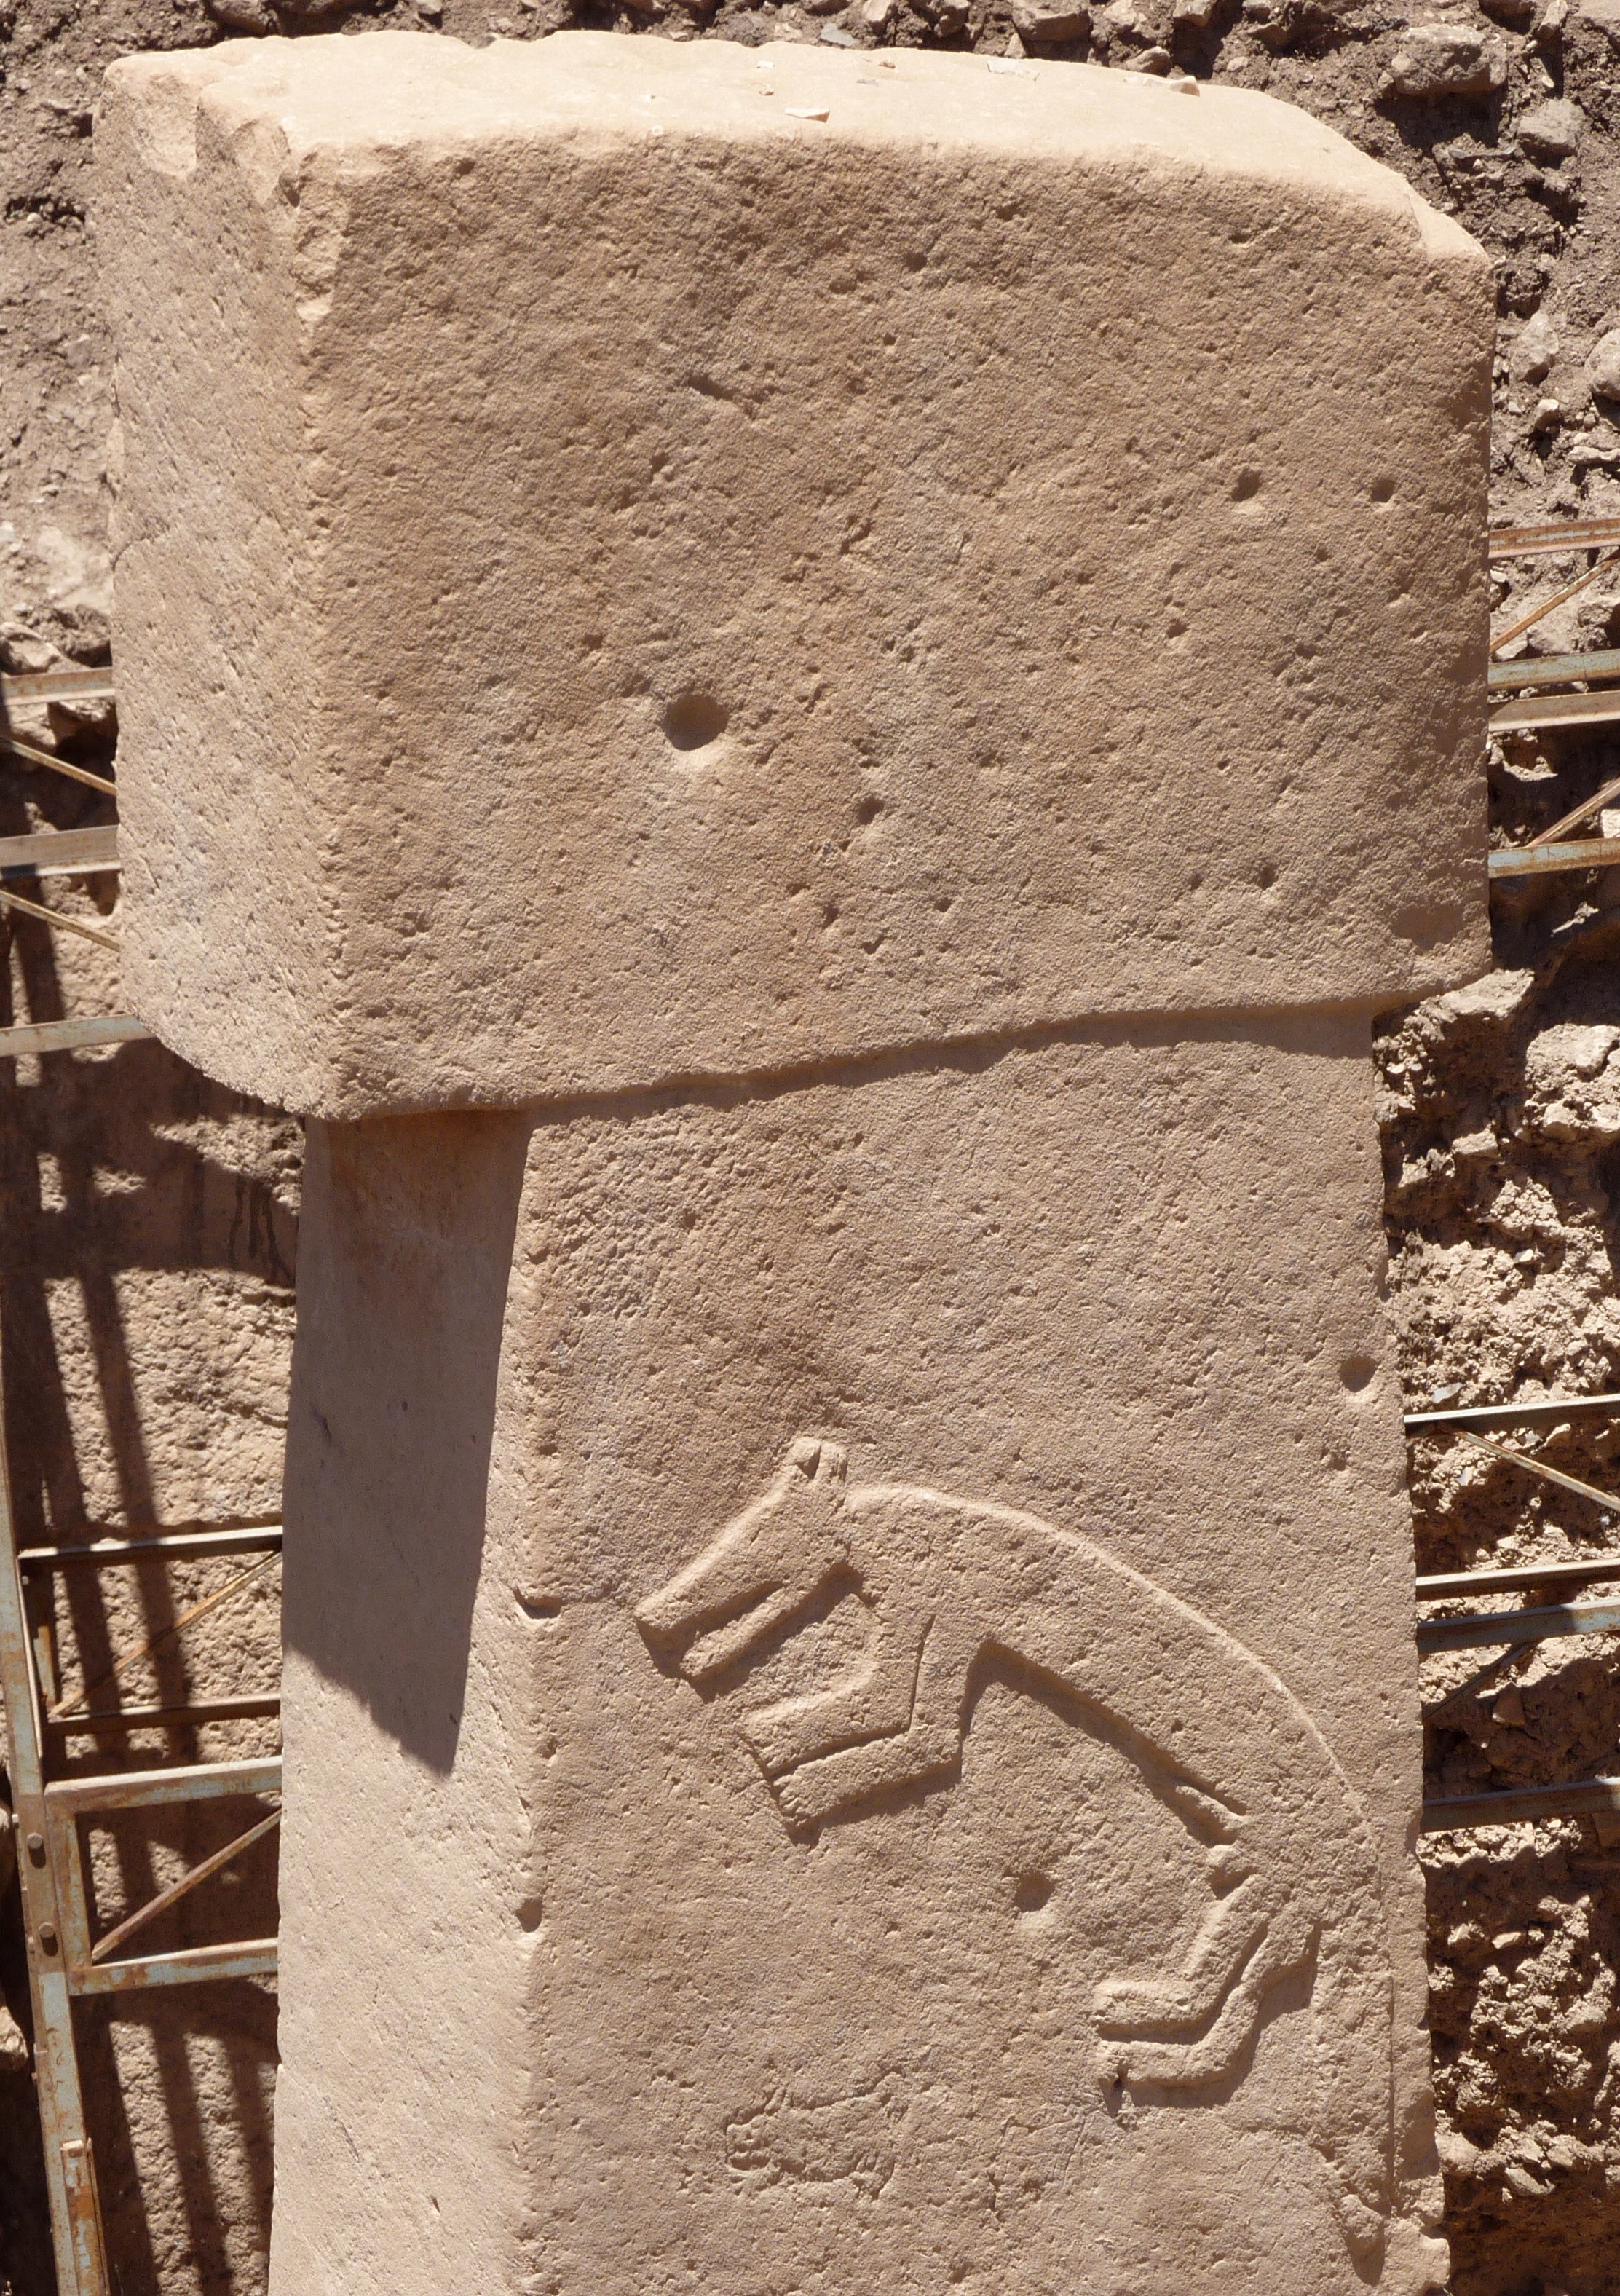 Sıçrayan tilki kabartması, Göbeklitepe, Çanak Çömlek Öncesi Neolitik Dönem (M.Ö. 9600 - 7300)